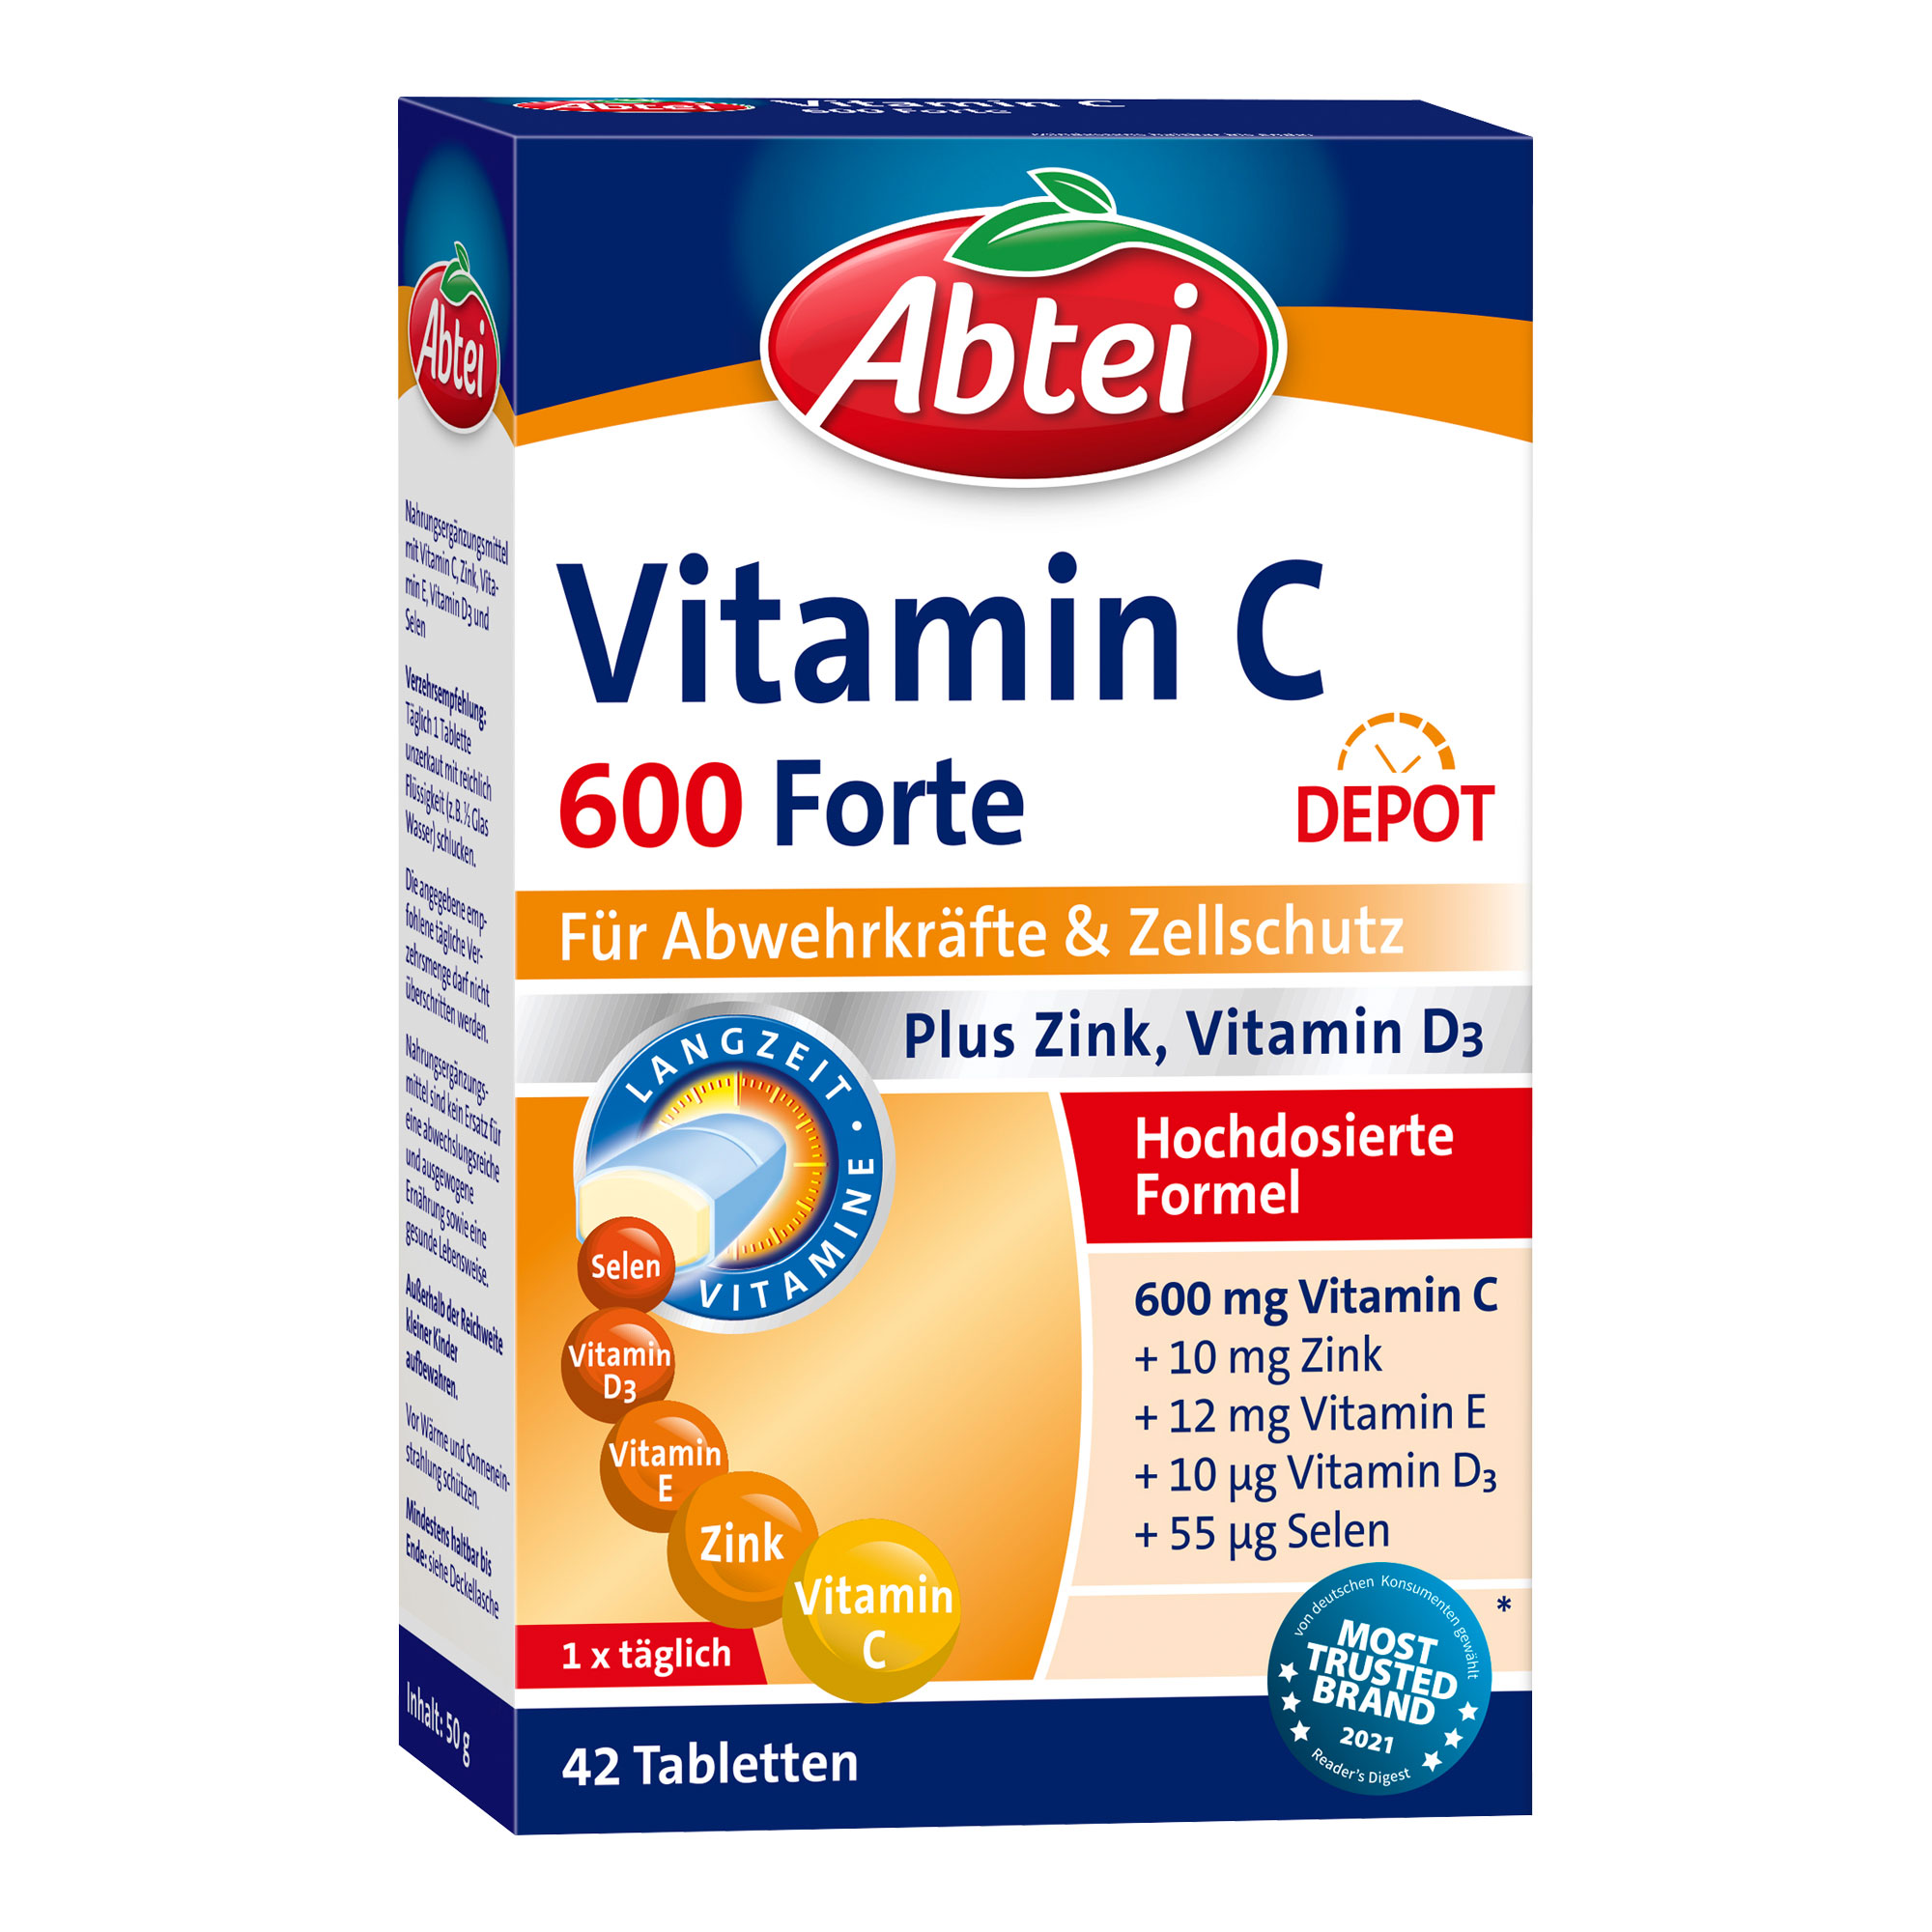 Nahrungsergänzungsmittel mit Vitamin C, Zink, Vitamin E, Vitamin D3 und Selen.